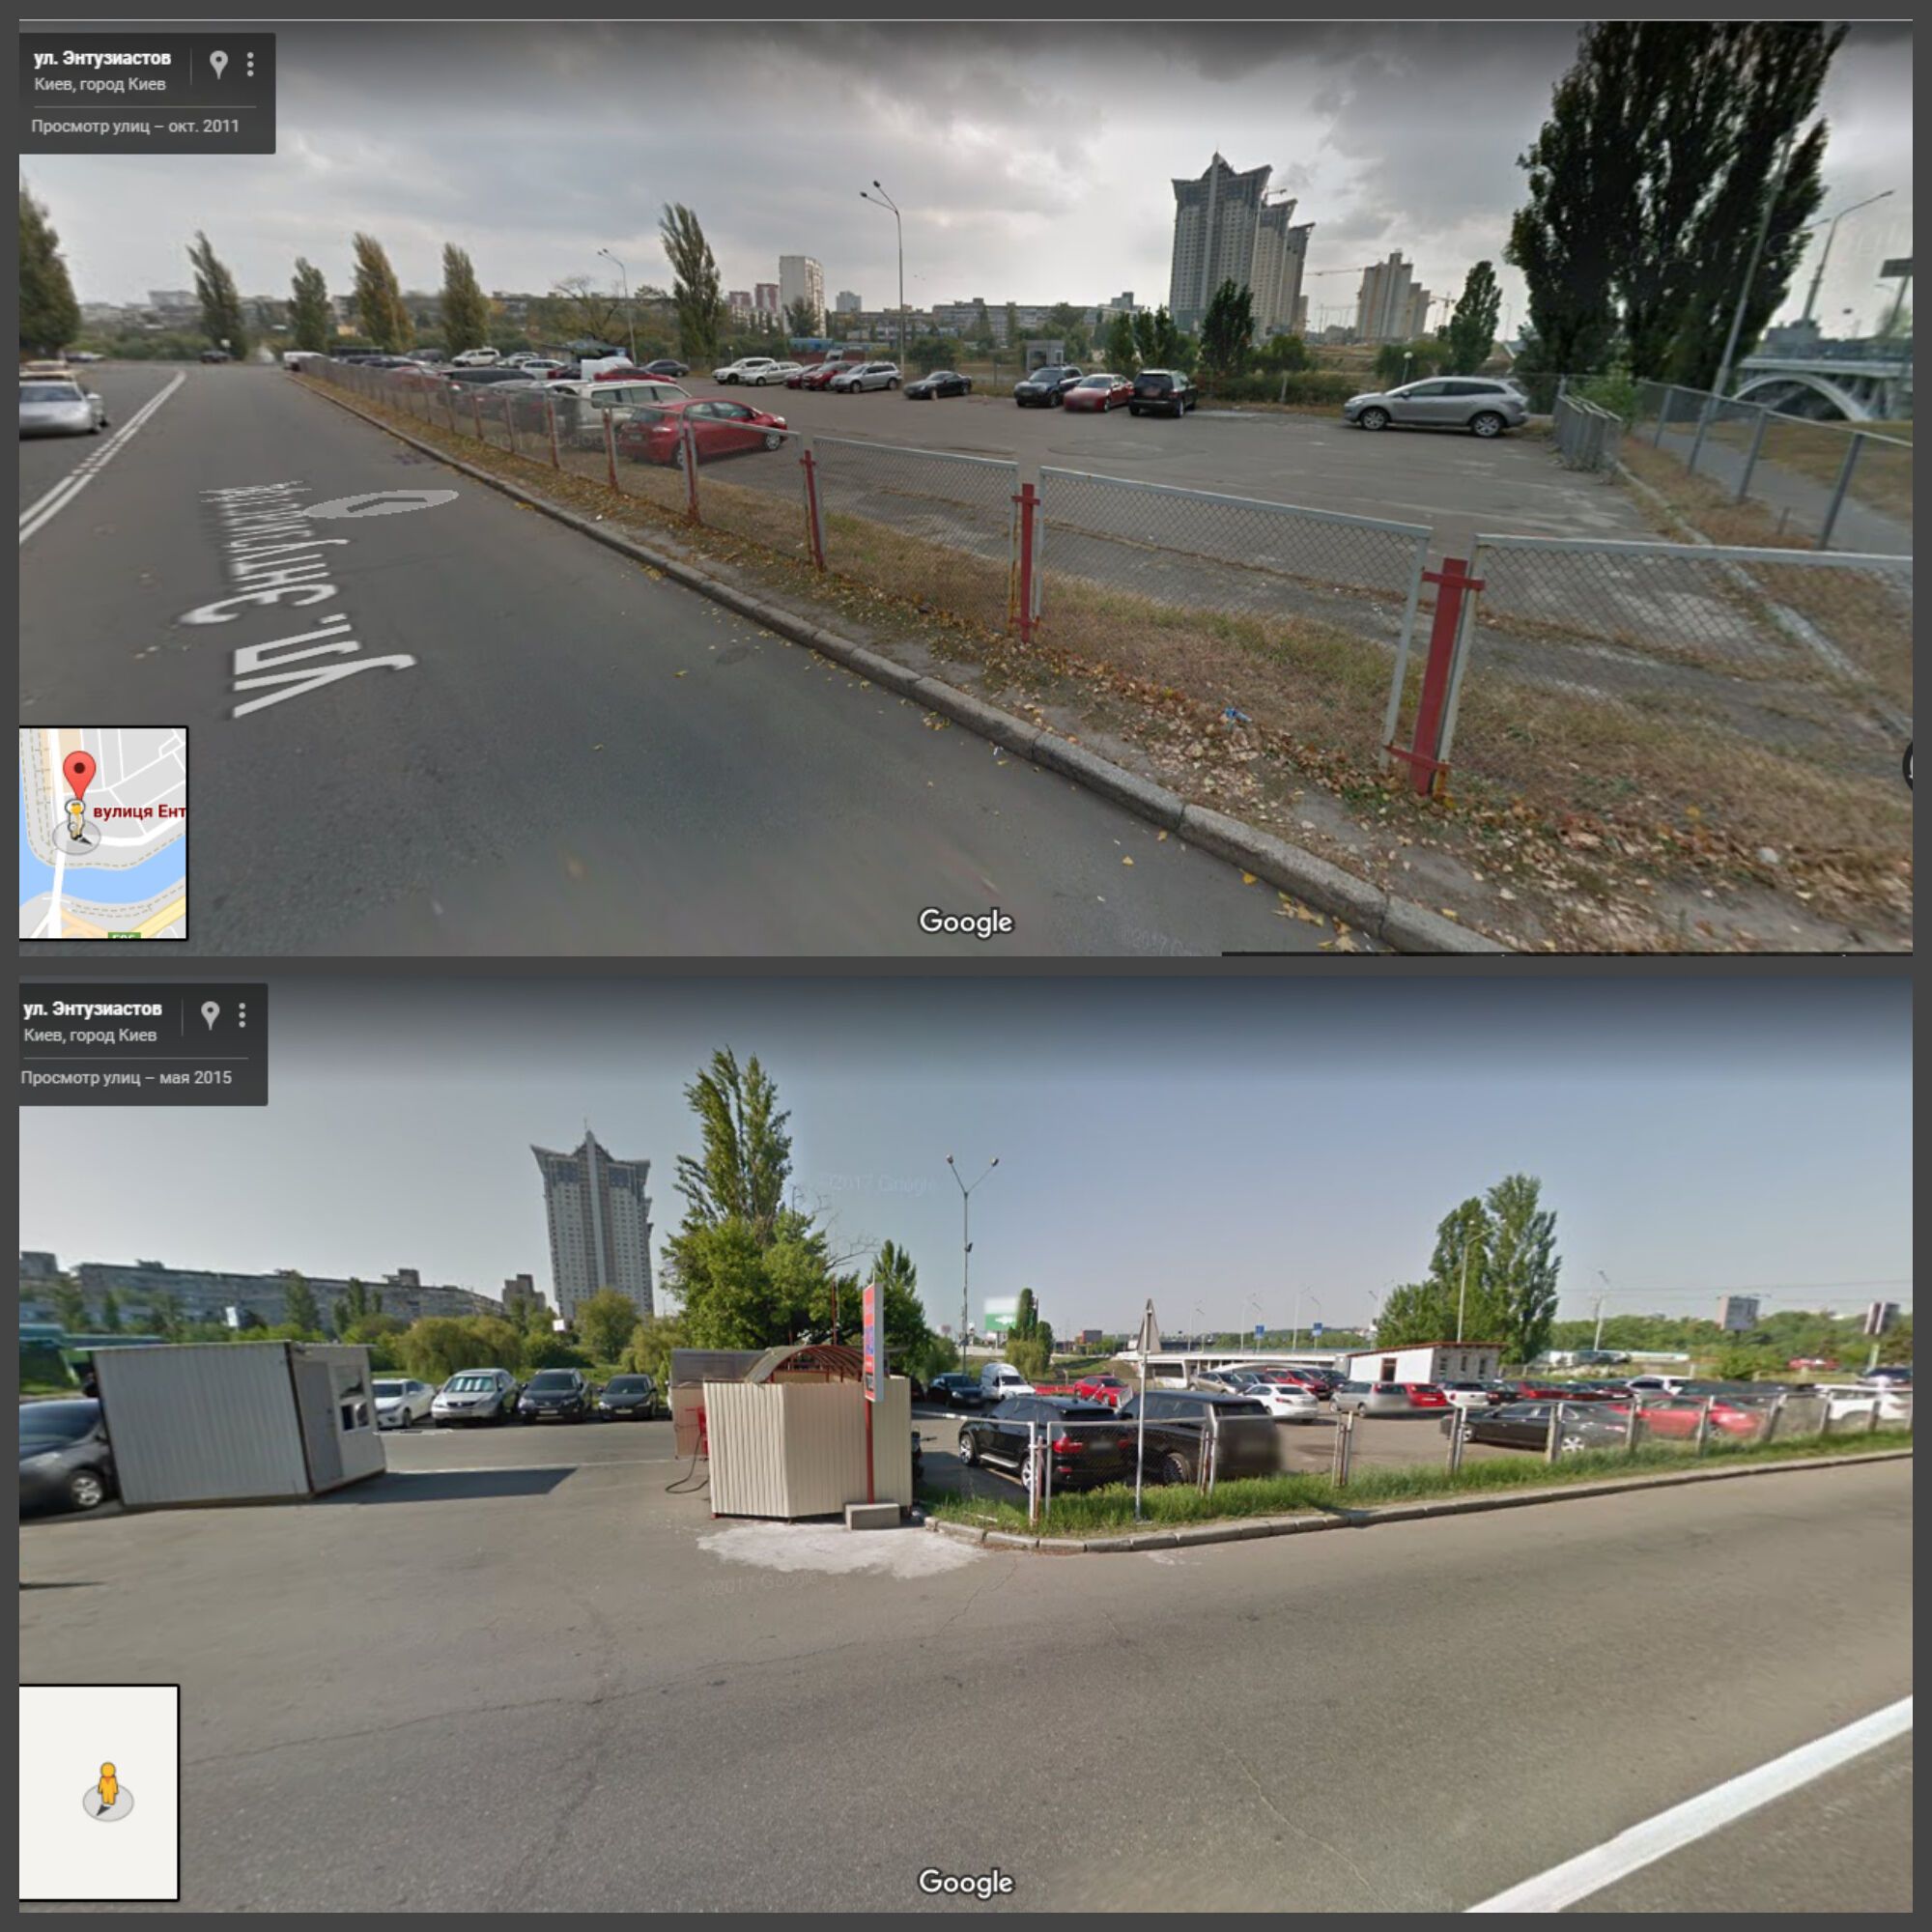 Знімки автостоянки при складанні Google Maps в 2011 р (зверху) і 2015 року (знизу)